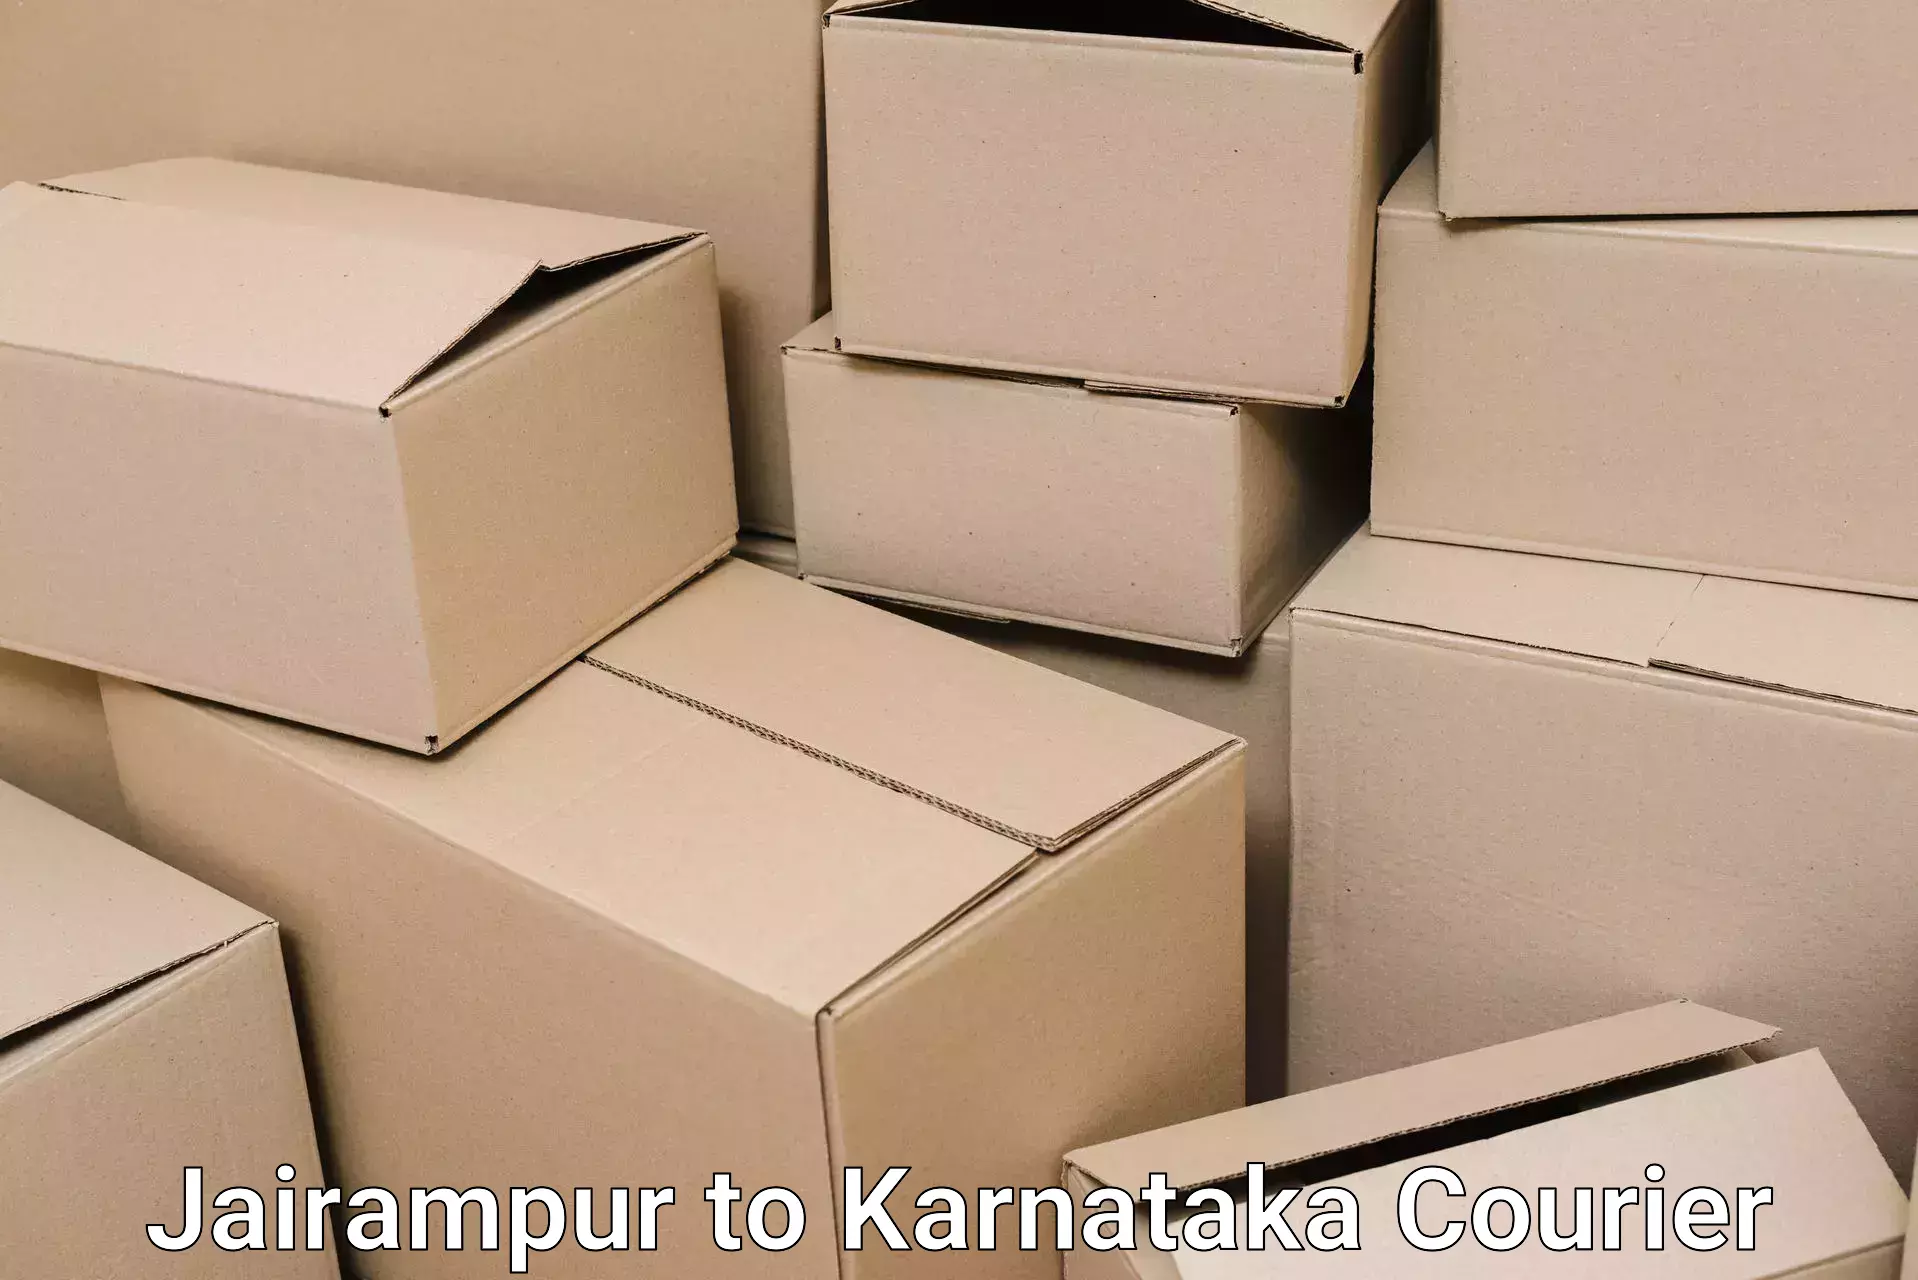 Furniture shipping services Jairampur to Karnataka